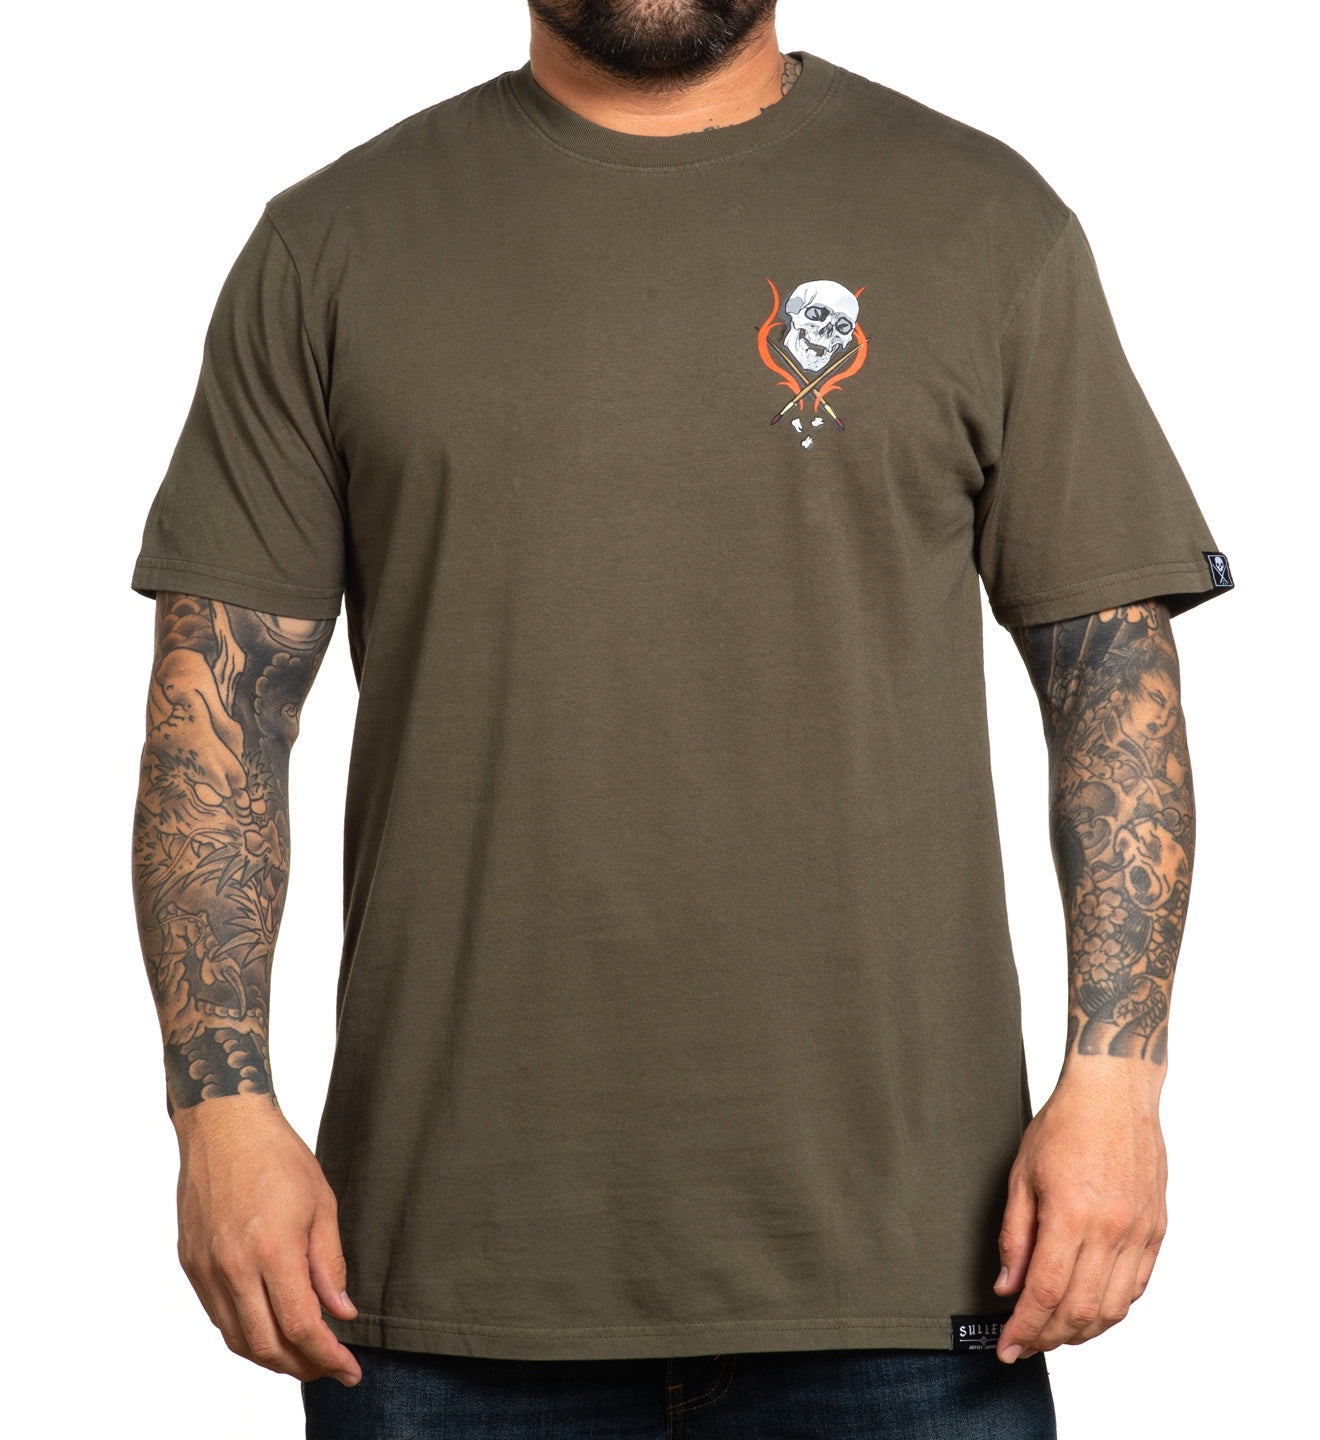 SULLEN Eagle Flame Men Graphic T-Shirt